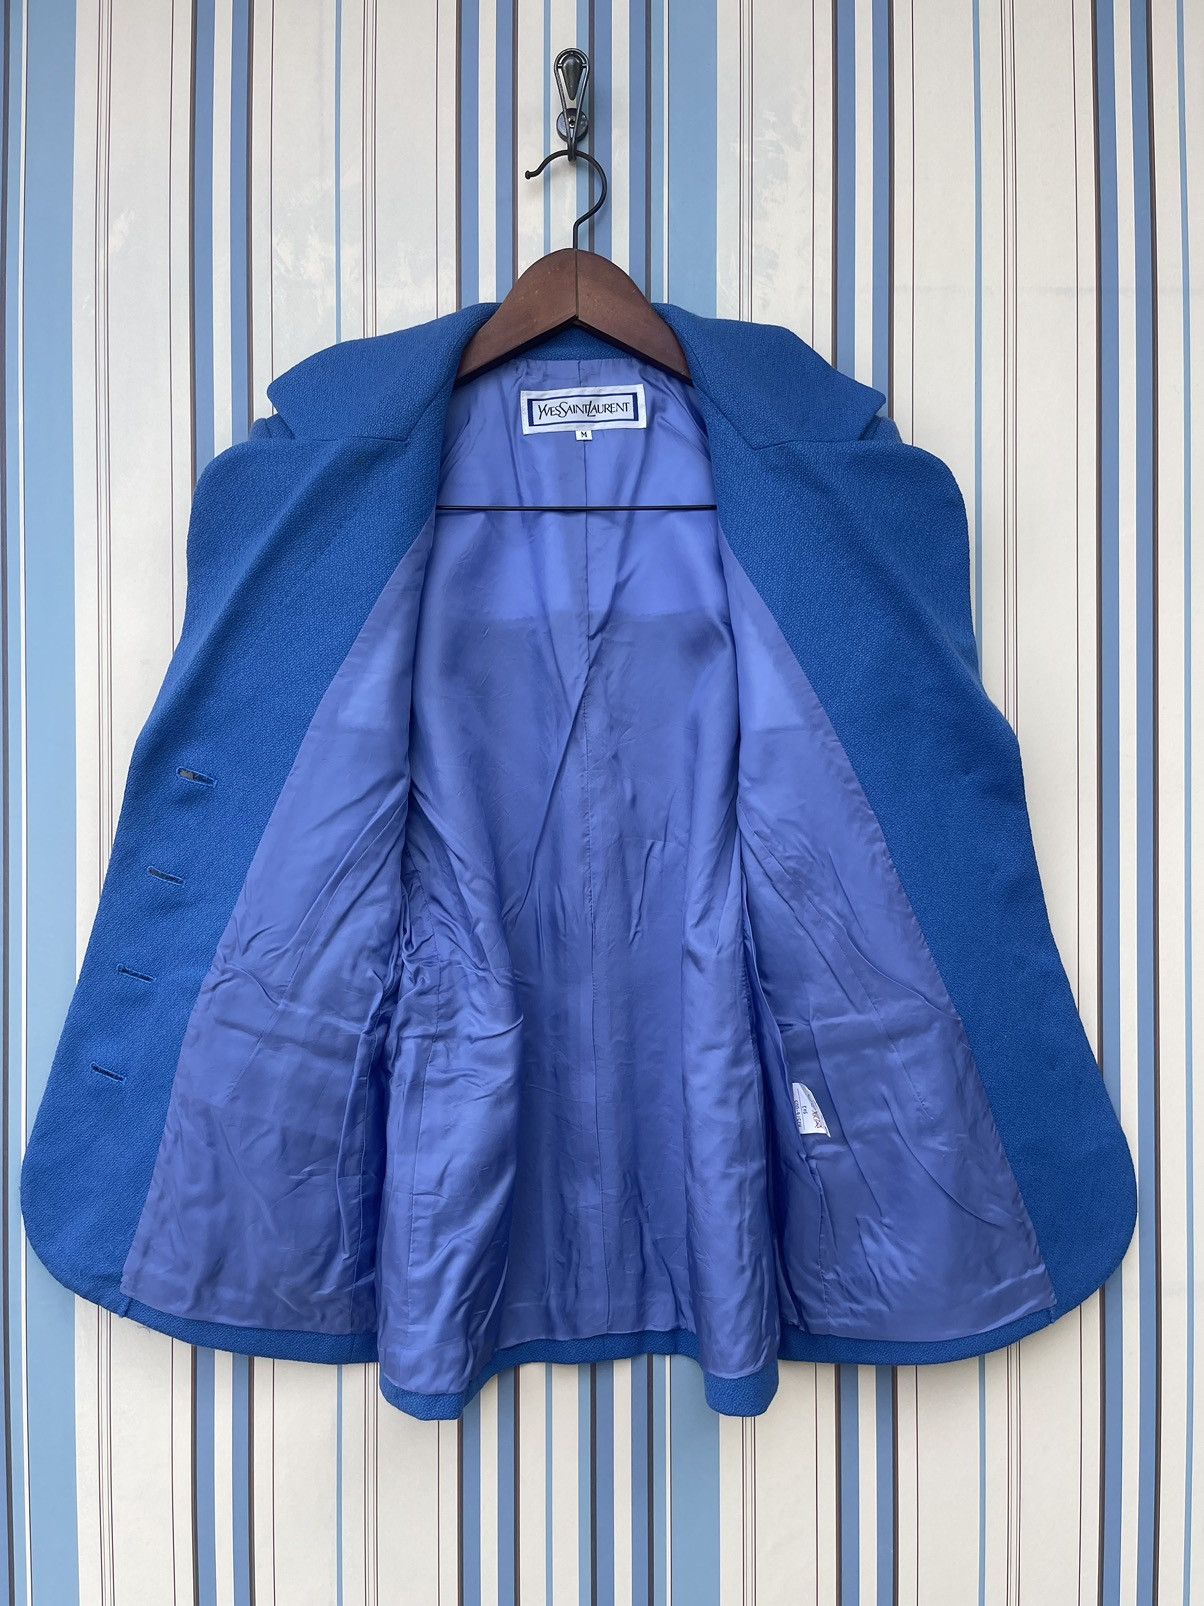 Vintage - Yves Saint Laurent Blazer Jacket For Women’s - 5